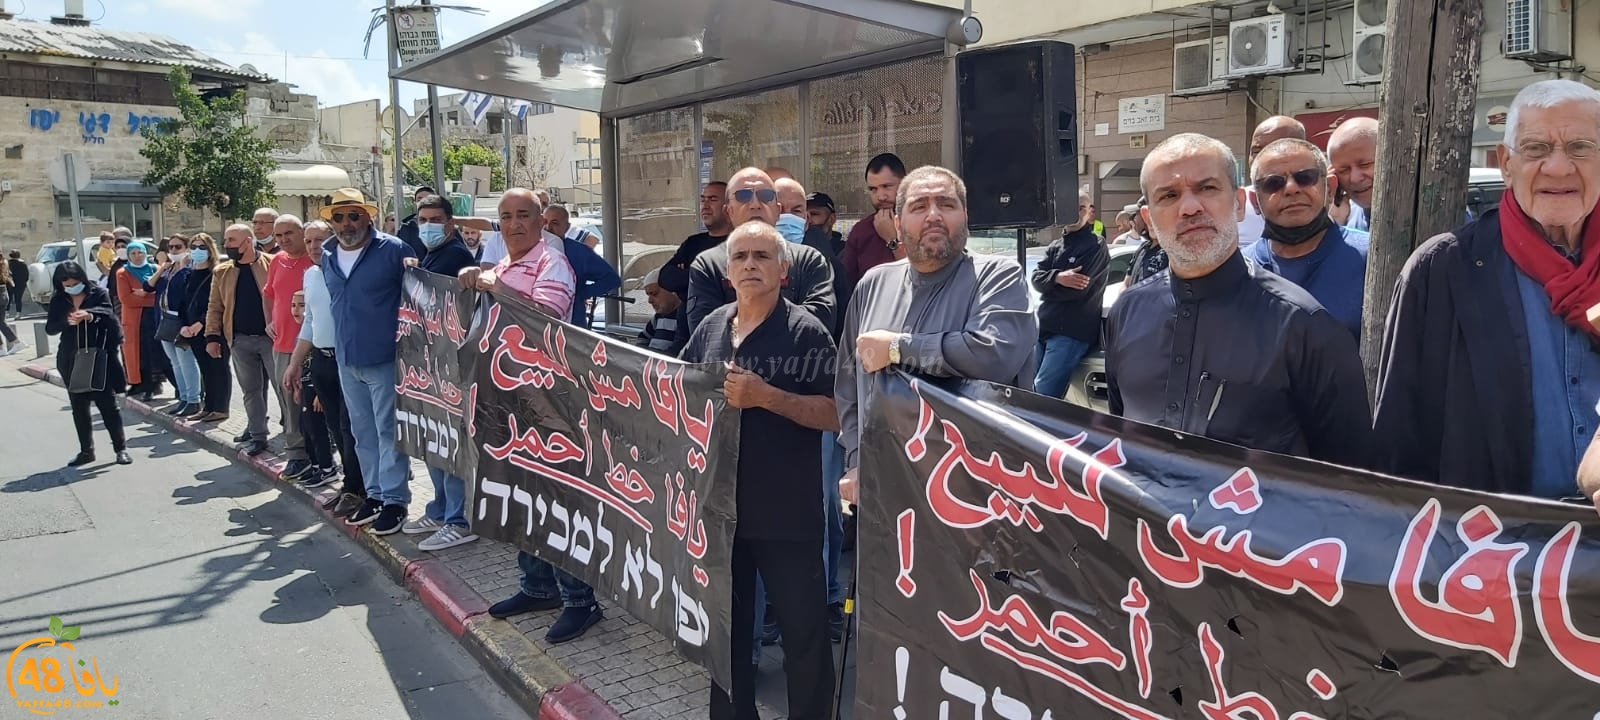 وقفة احتجاجية لأهالي مدينة يافا ضد شركة العميدار وسياساتها للأسبوع السابع